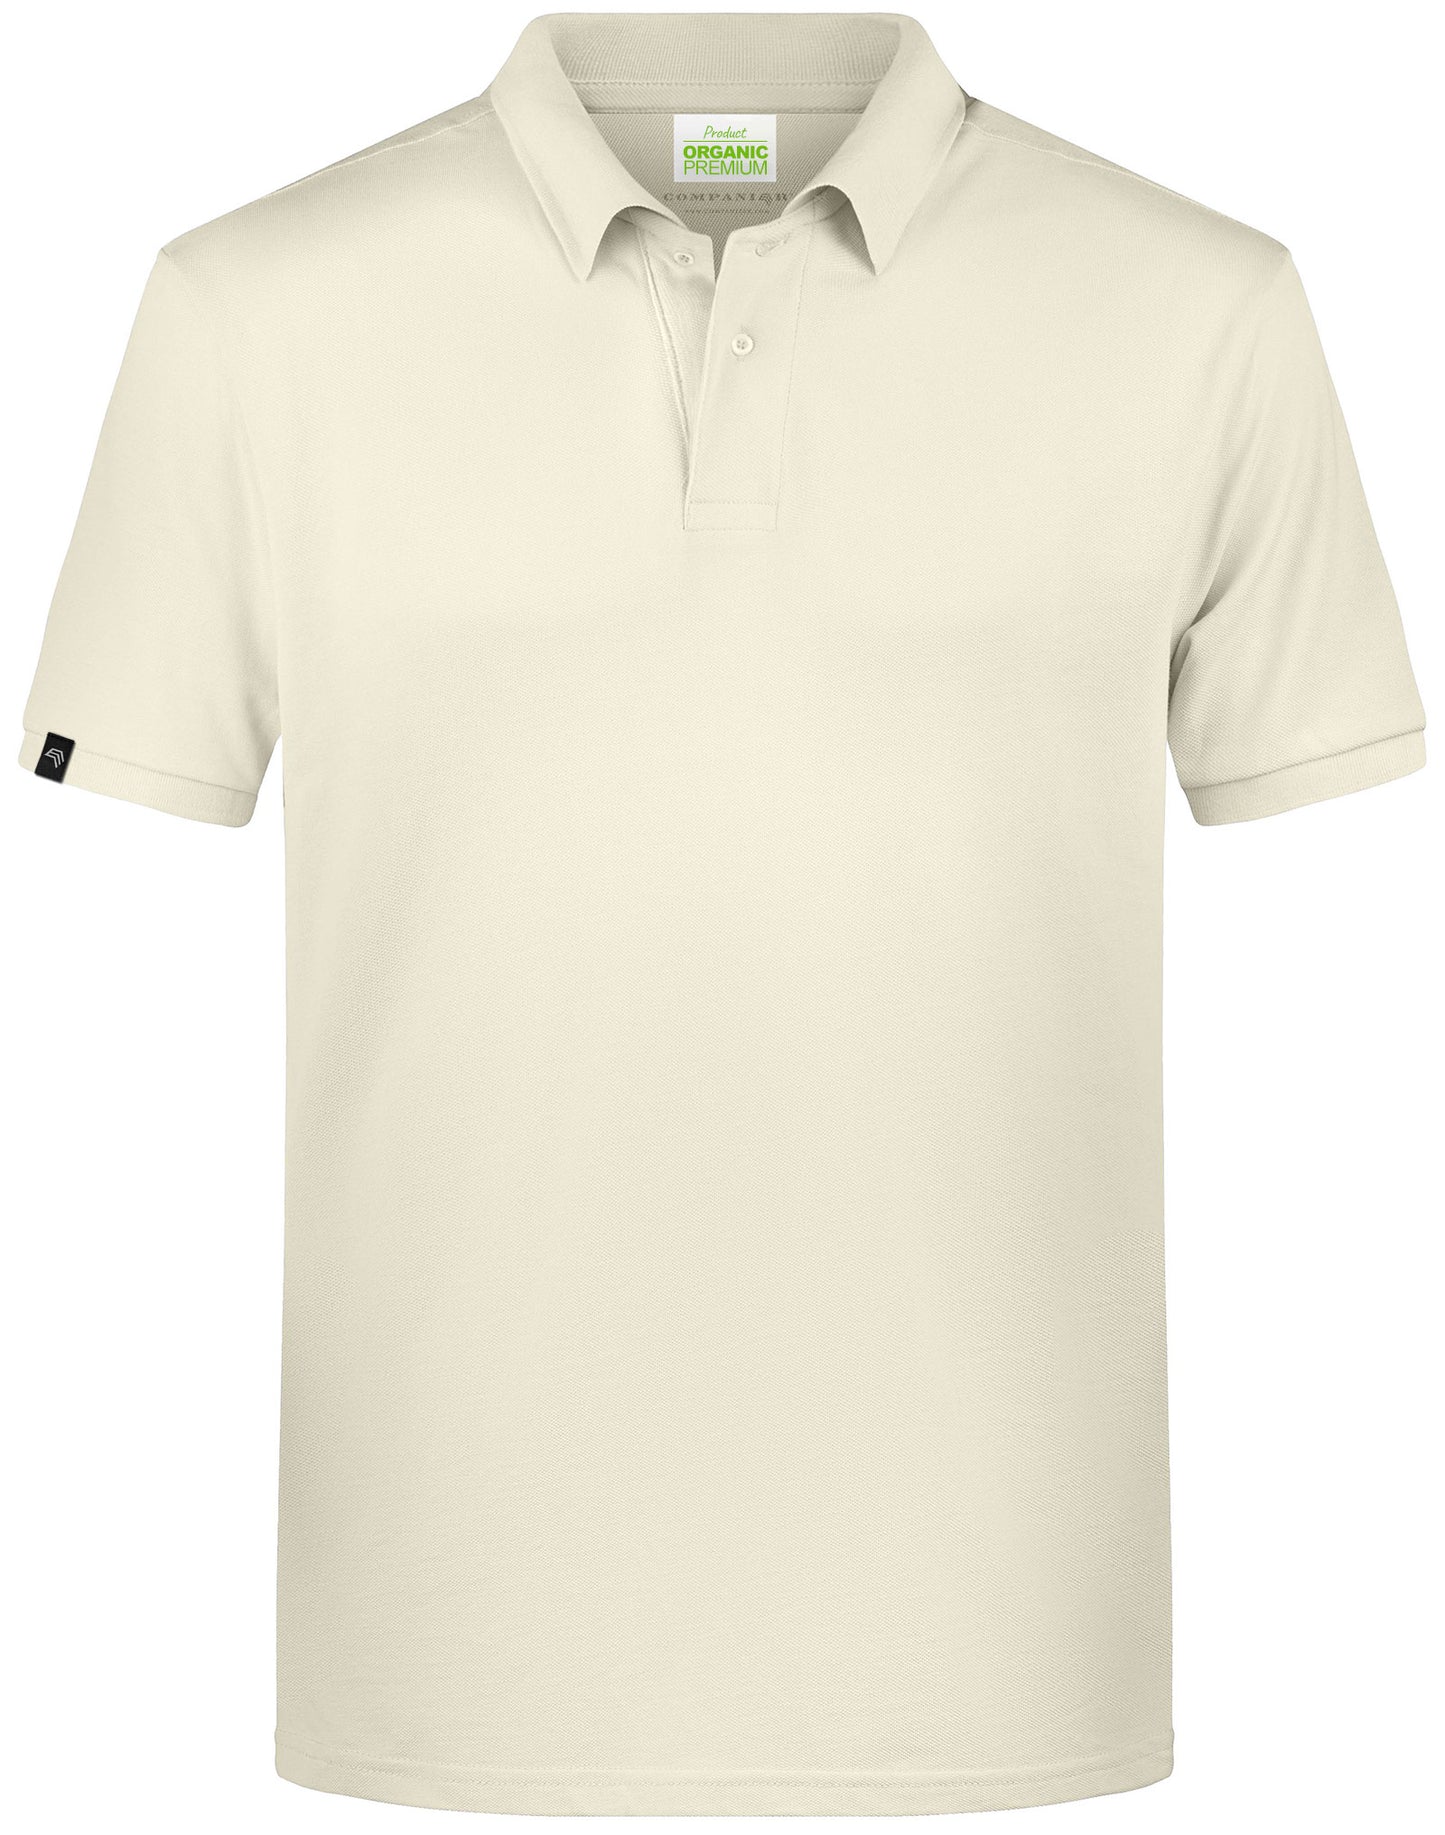 JAN 8010 ― Herren Bio-Baumwolle Polo Shirt - Vanilla Gelb